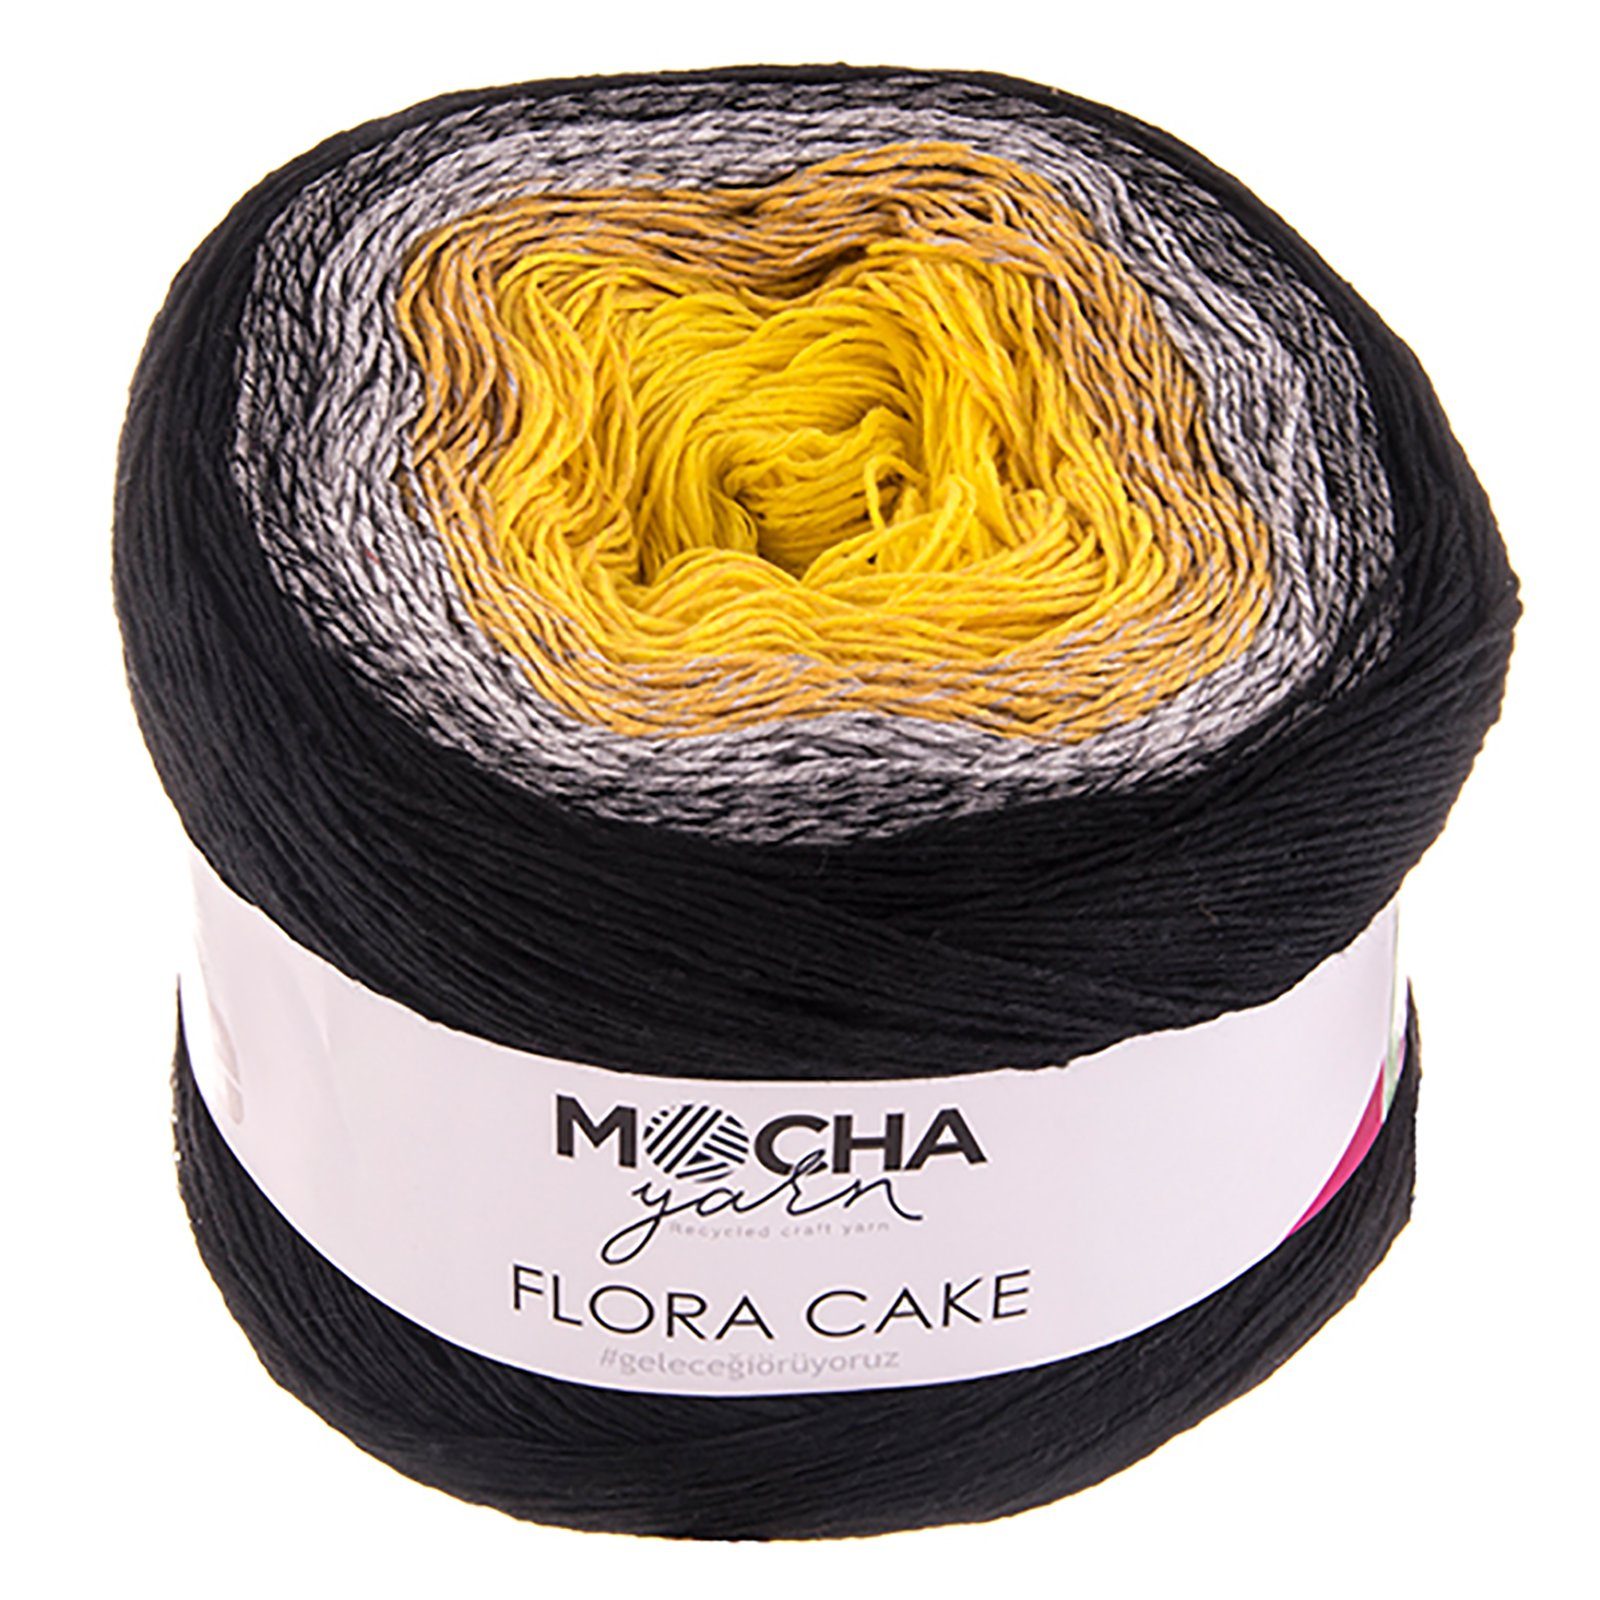 mochayarn 250g Farbverlaufsgarn Flora Cake Häkelwolle, 900 m, FLO03 gelb-grau-schwarz